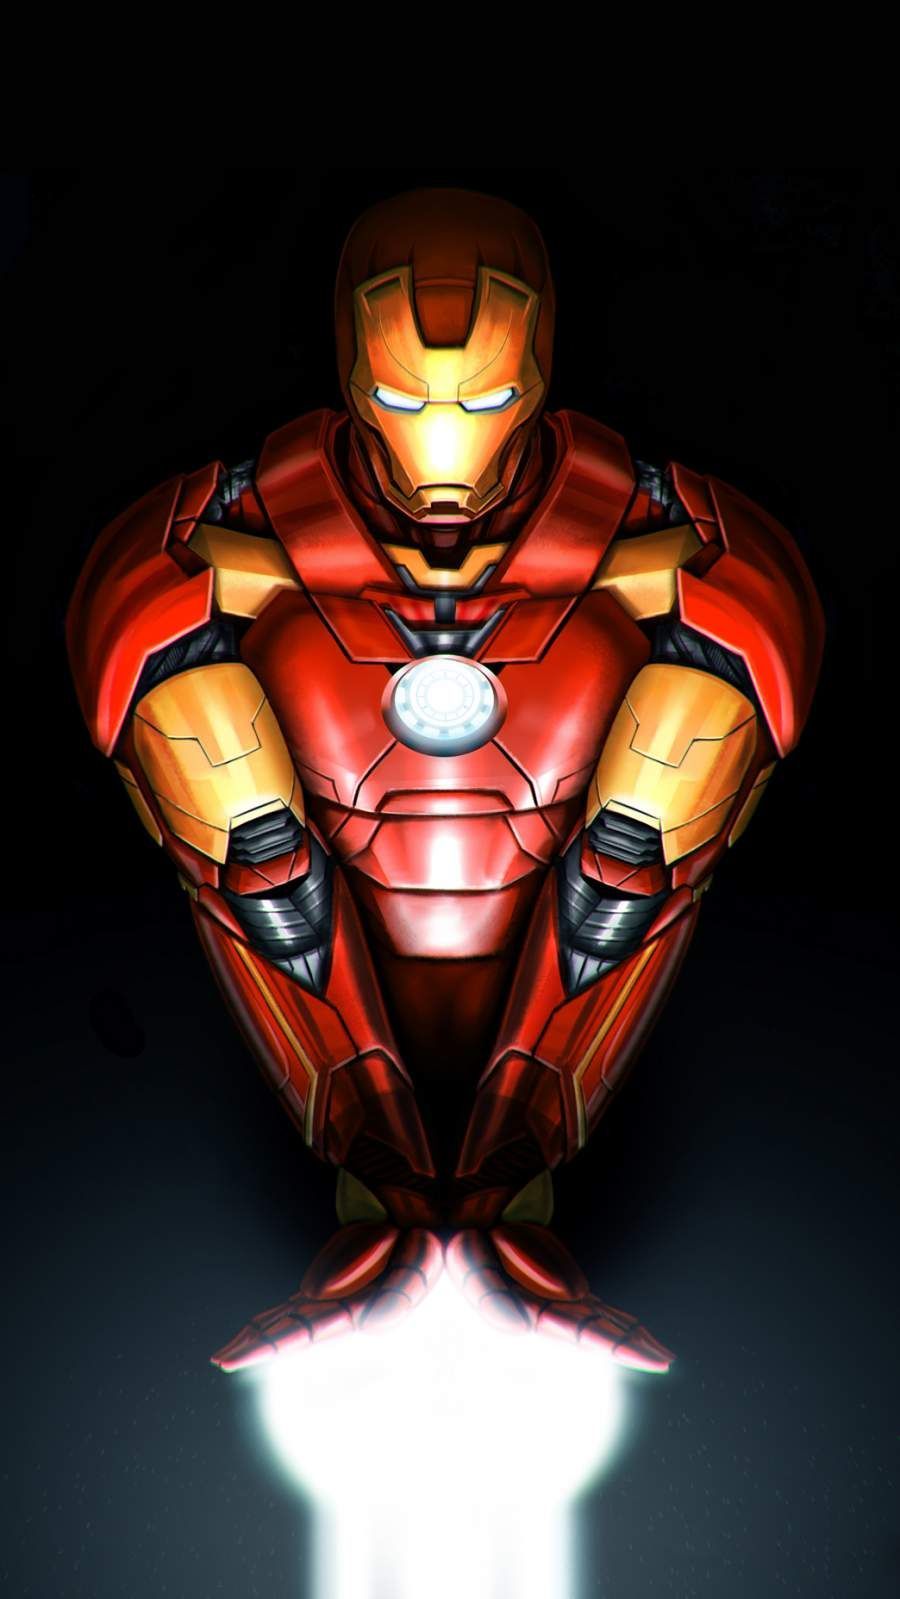 Iron Man Repulsor Arms iPhone Wallpaper. Iron man, Iron man wallpaper, Superhero wallpaper